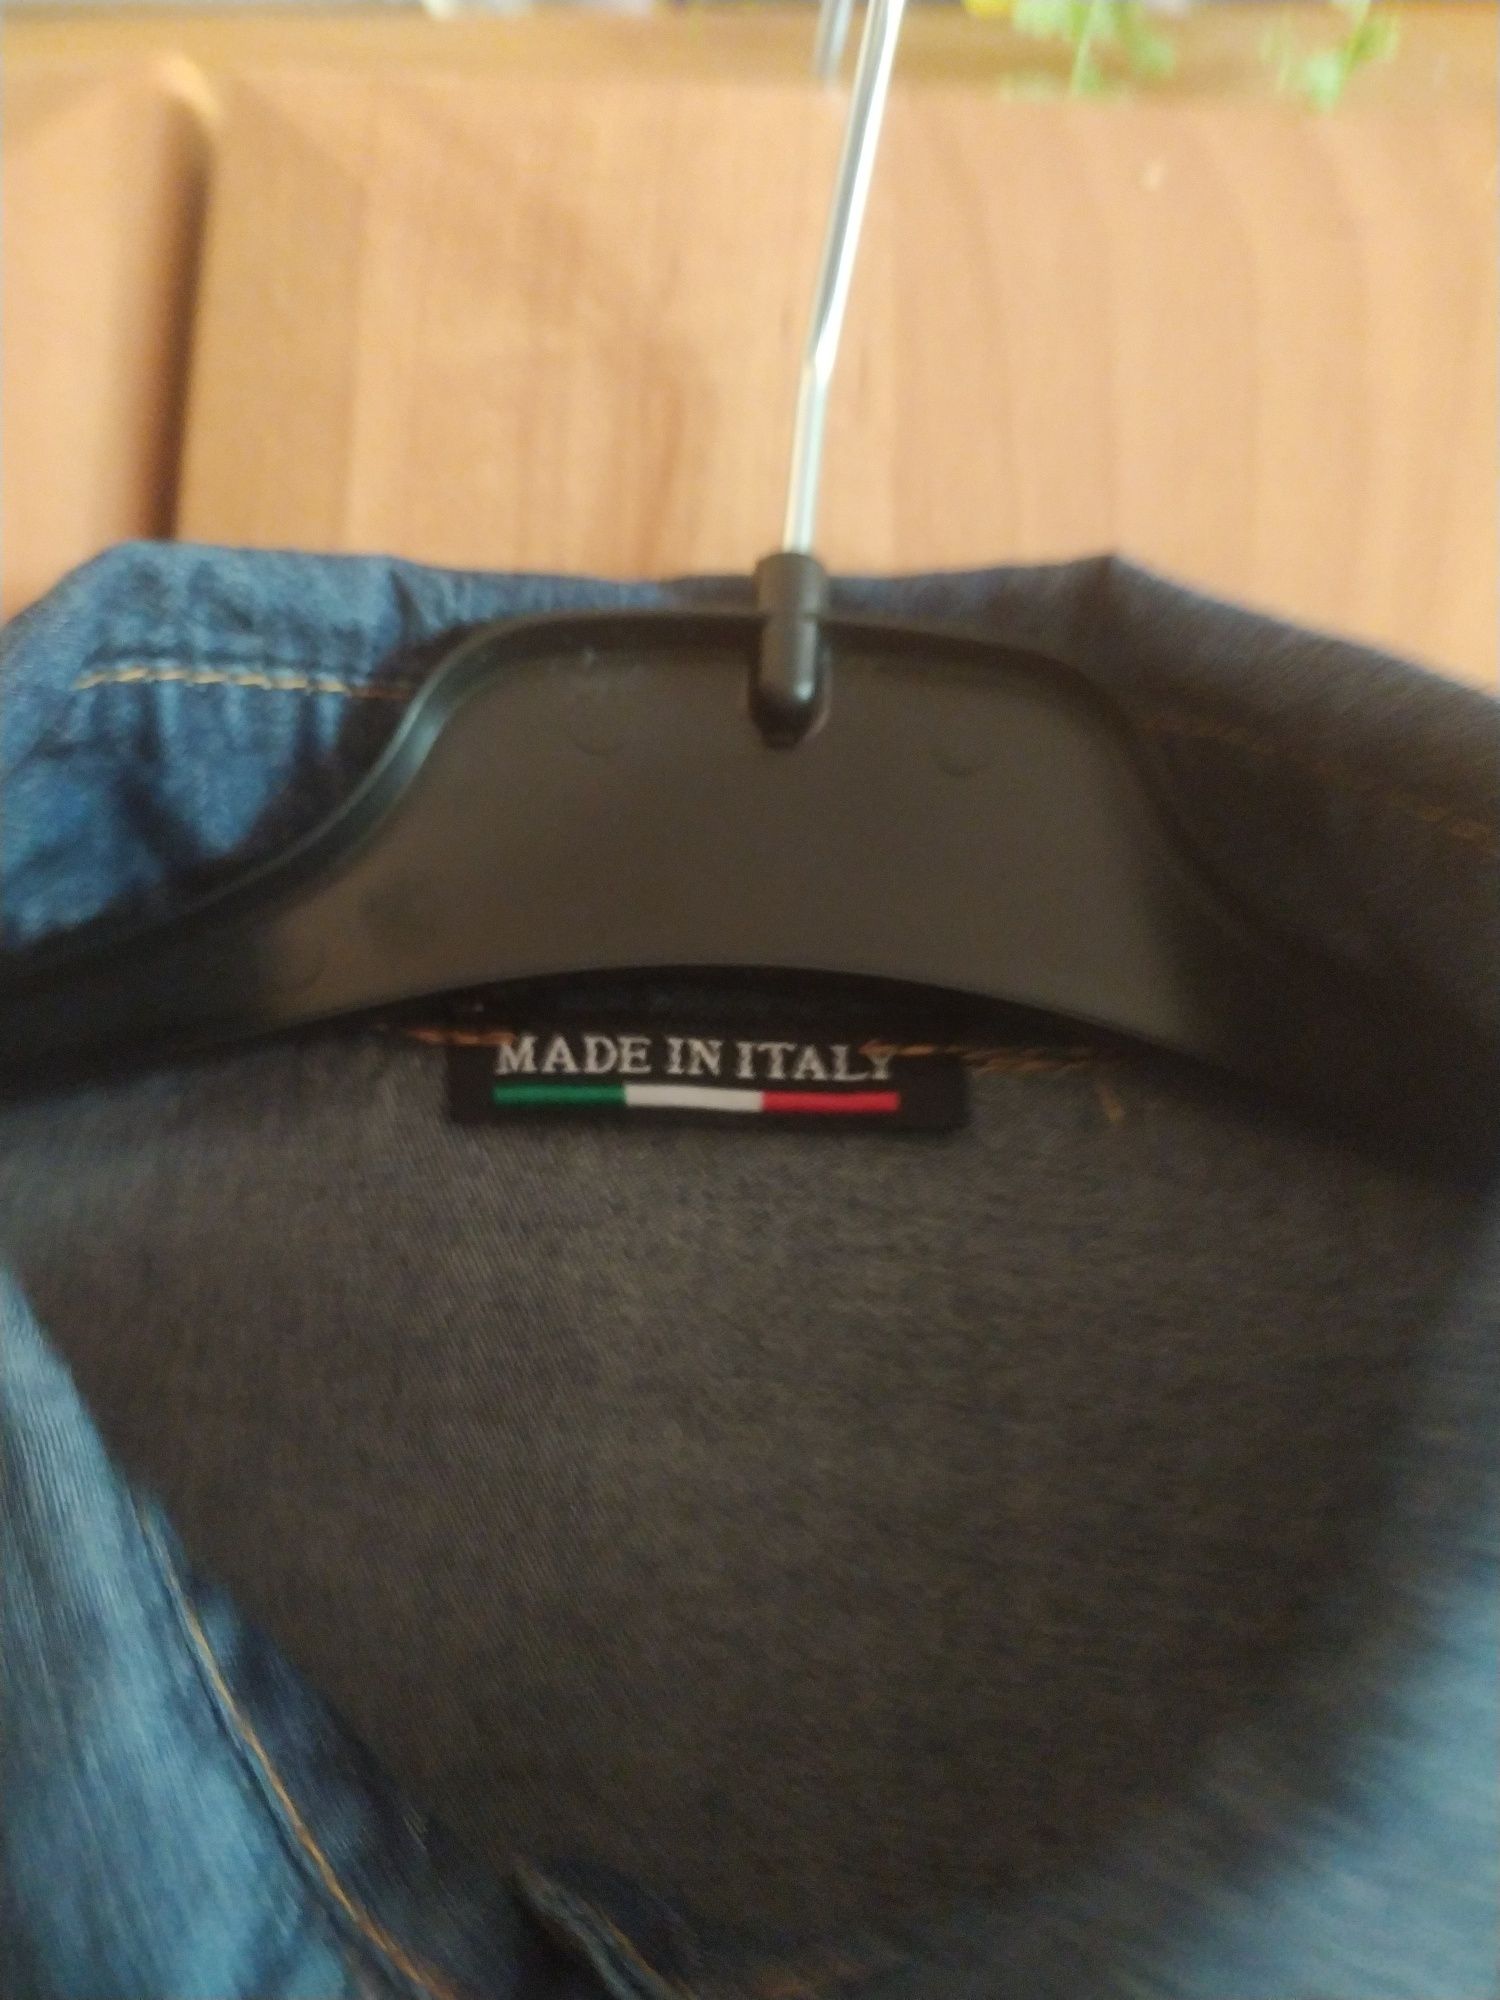 Koszula bawełniana bluzka jeansowa dżinsowa r 38 M Made in Italy